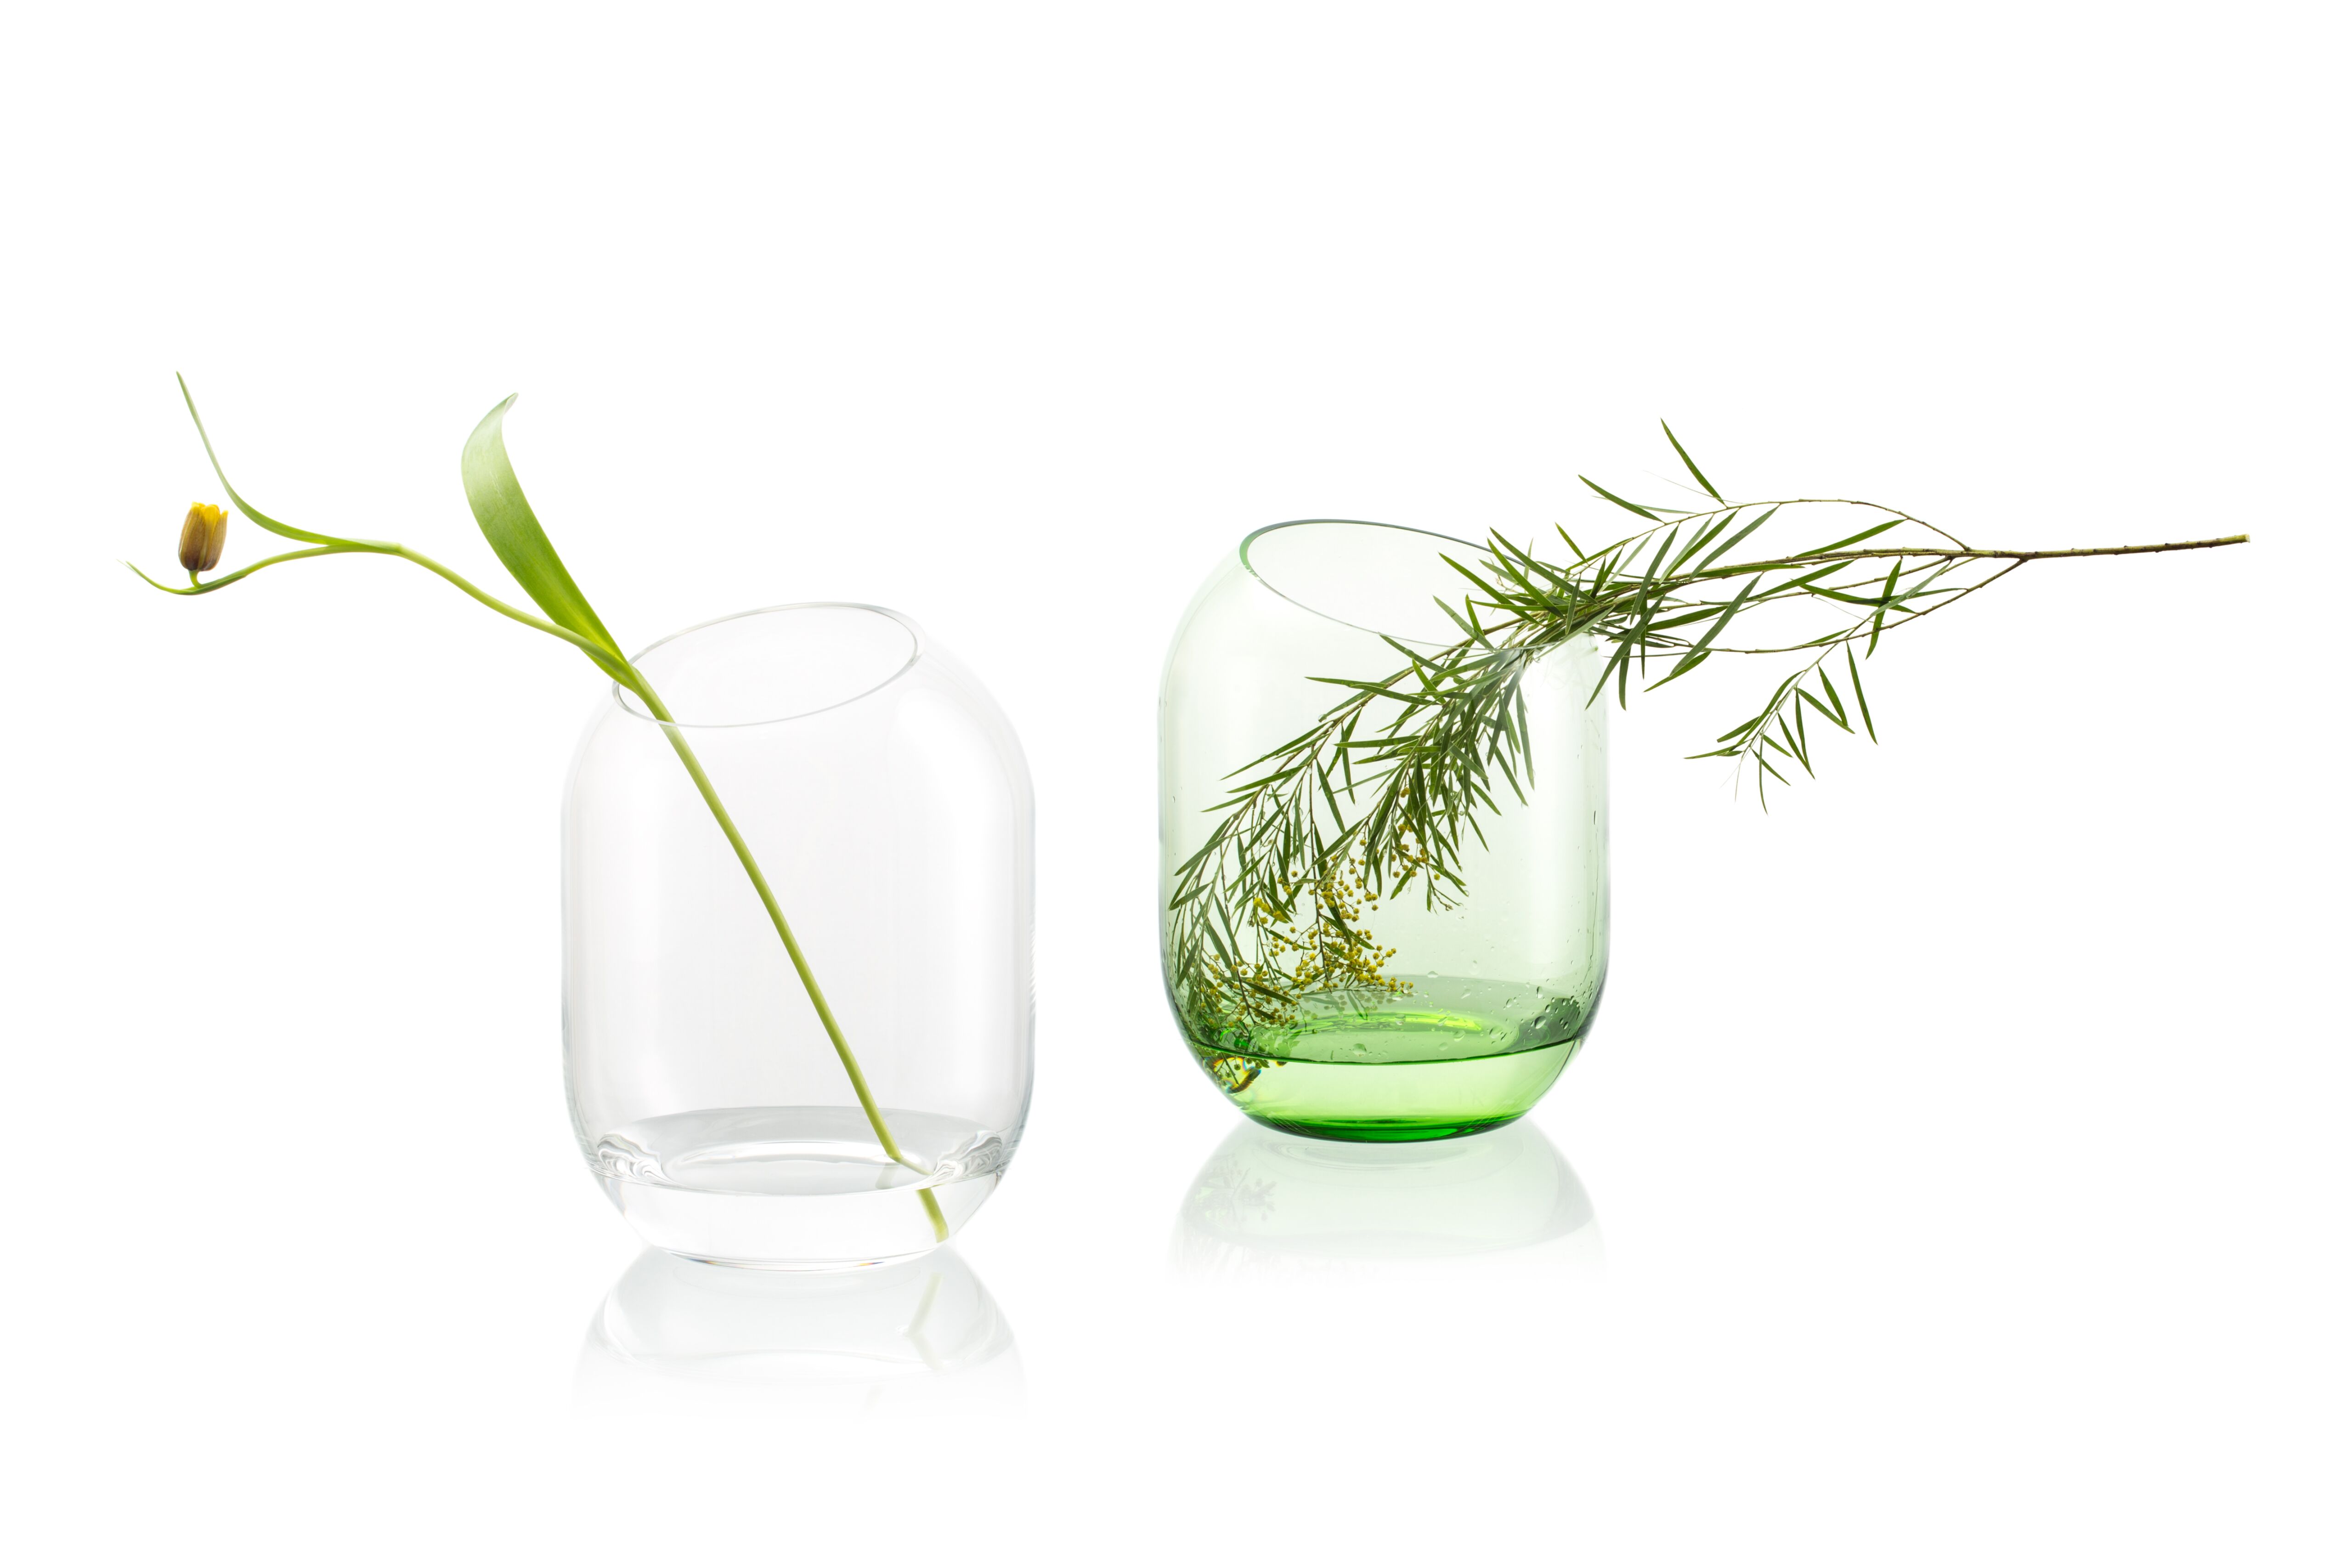 Dve sklenené vázy s kvetmi stojace vedľa seba, jedna číra a druhá zelena na bielom pozadí. 